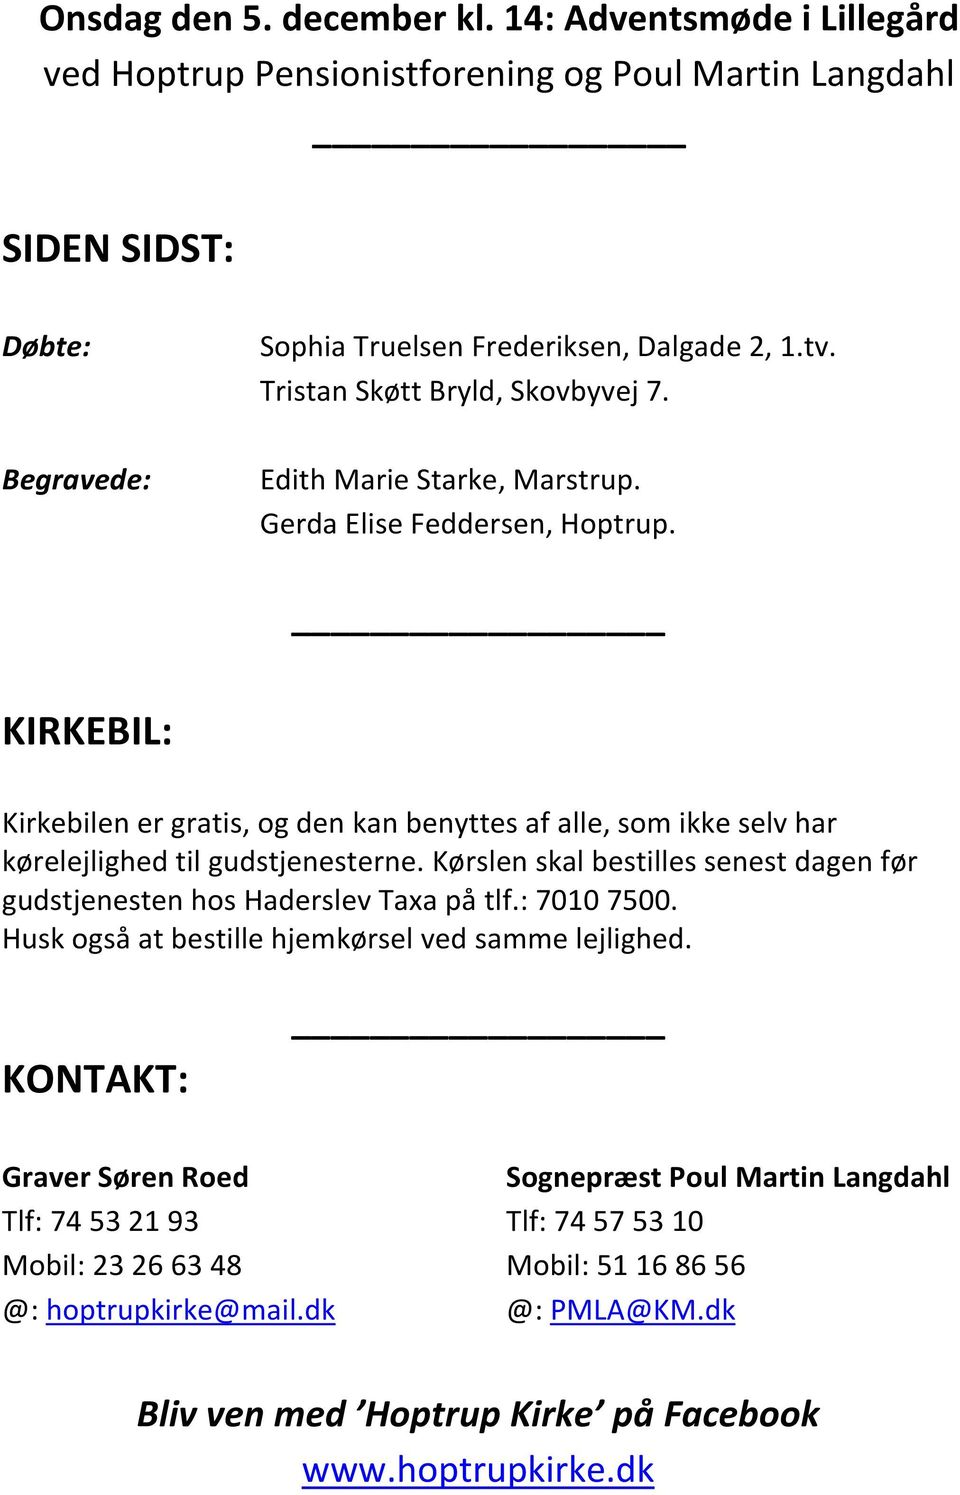 FÆLLESSKOLEN I HOPTRUP - PDF download